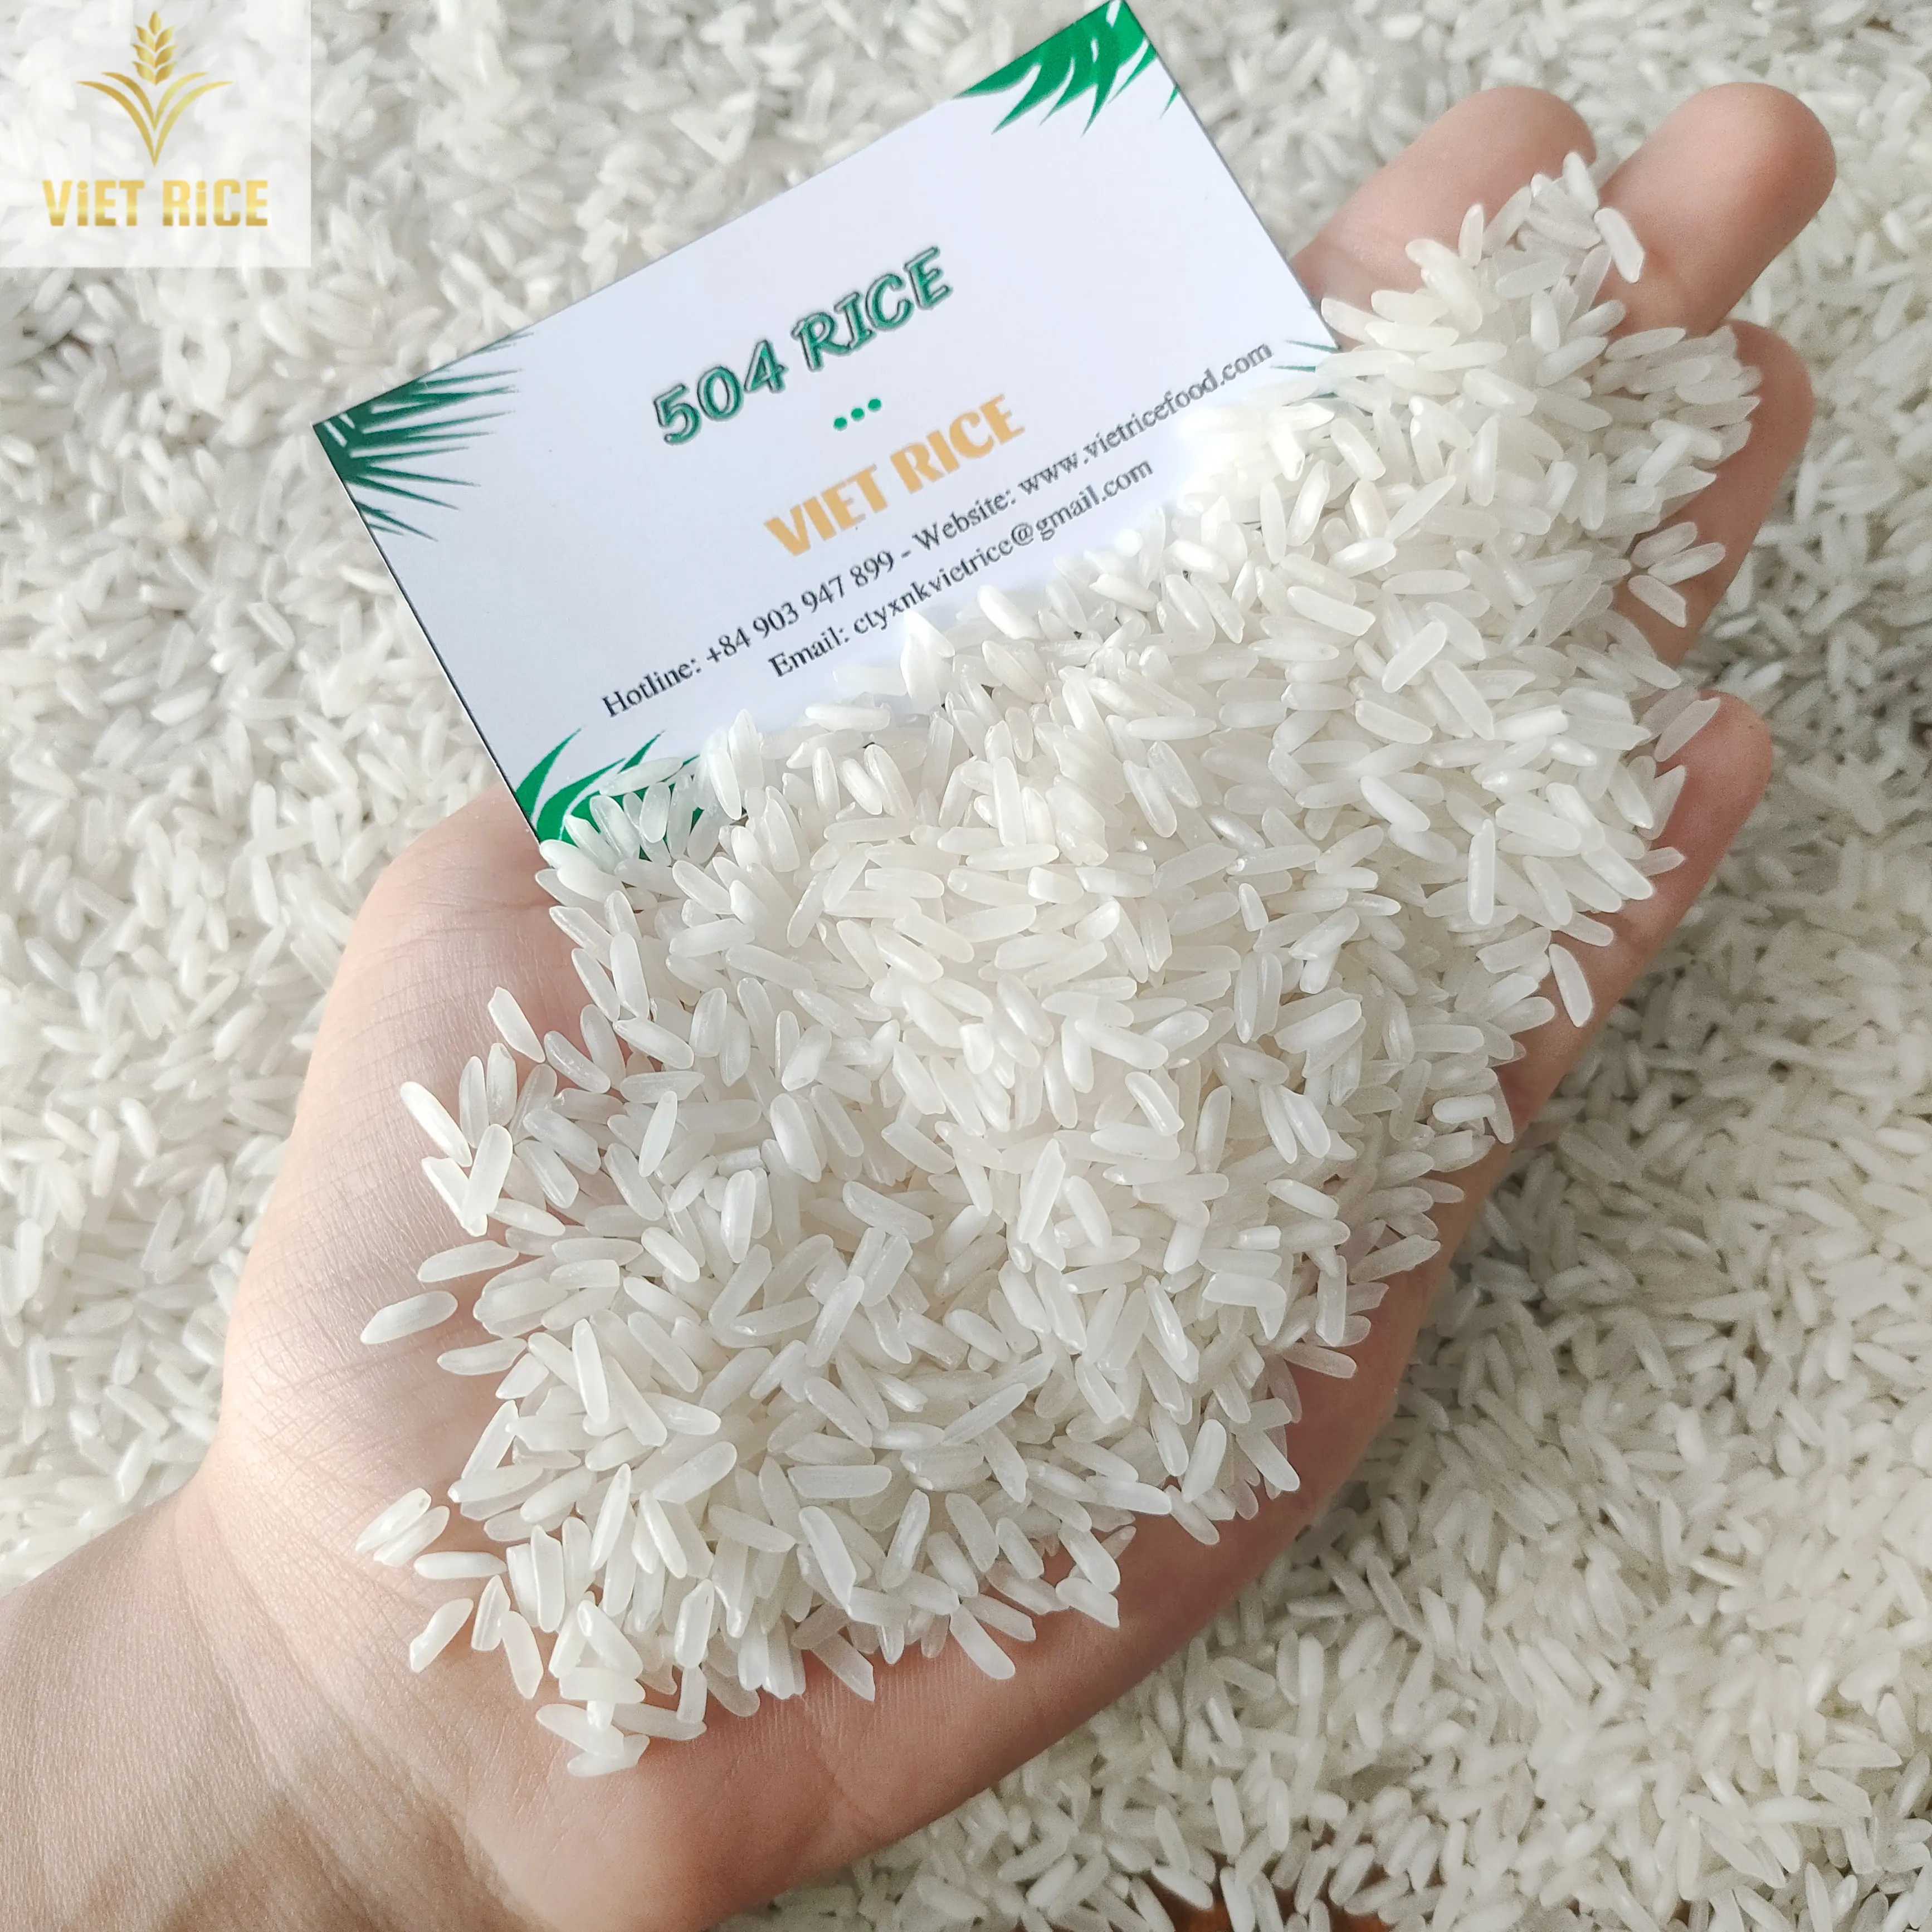 ベトナム米 (ベストサプライヤー、504米) 国内、国際的に優れた品質と量の白米が販売されています